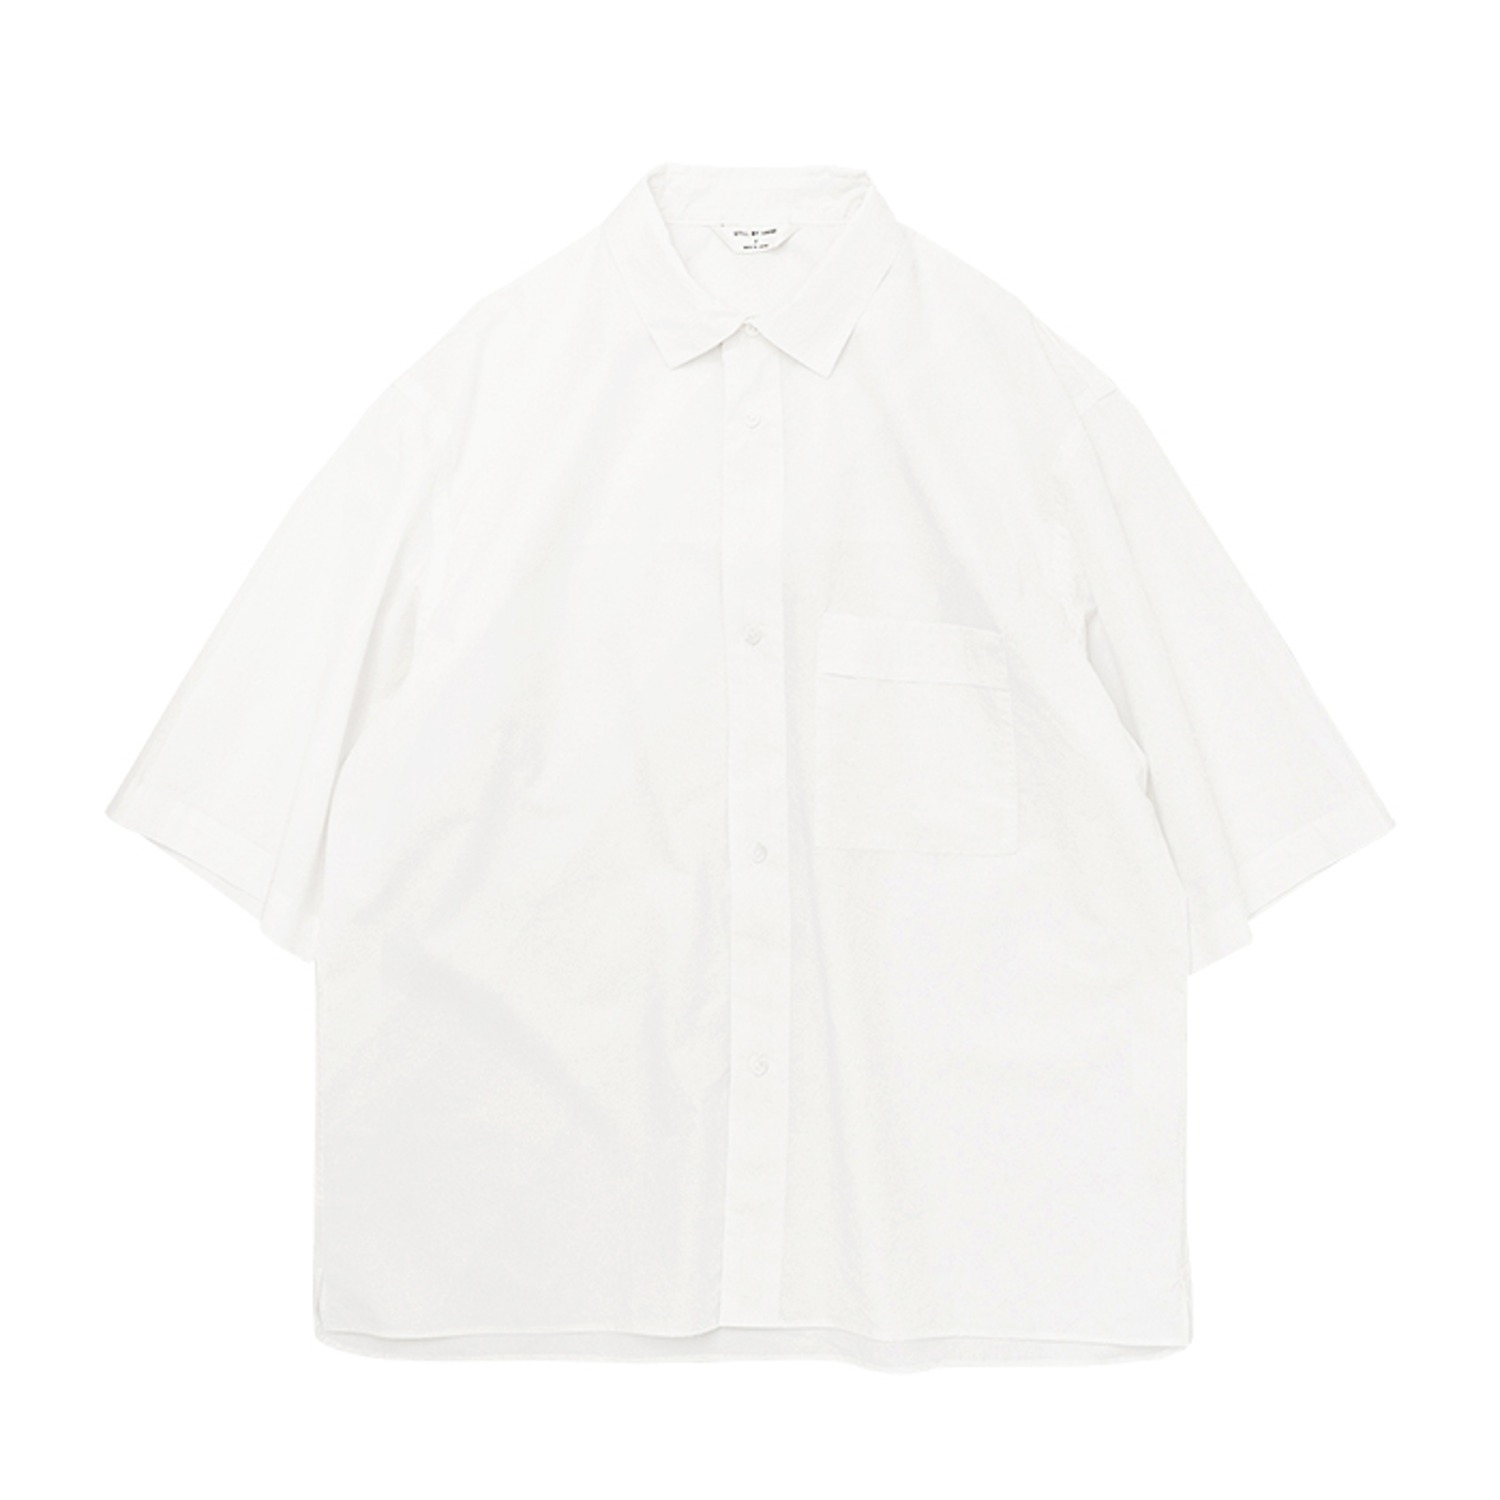 c/li half sleeve shirt white